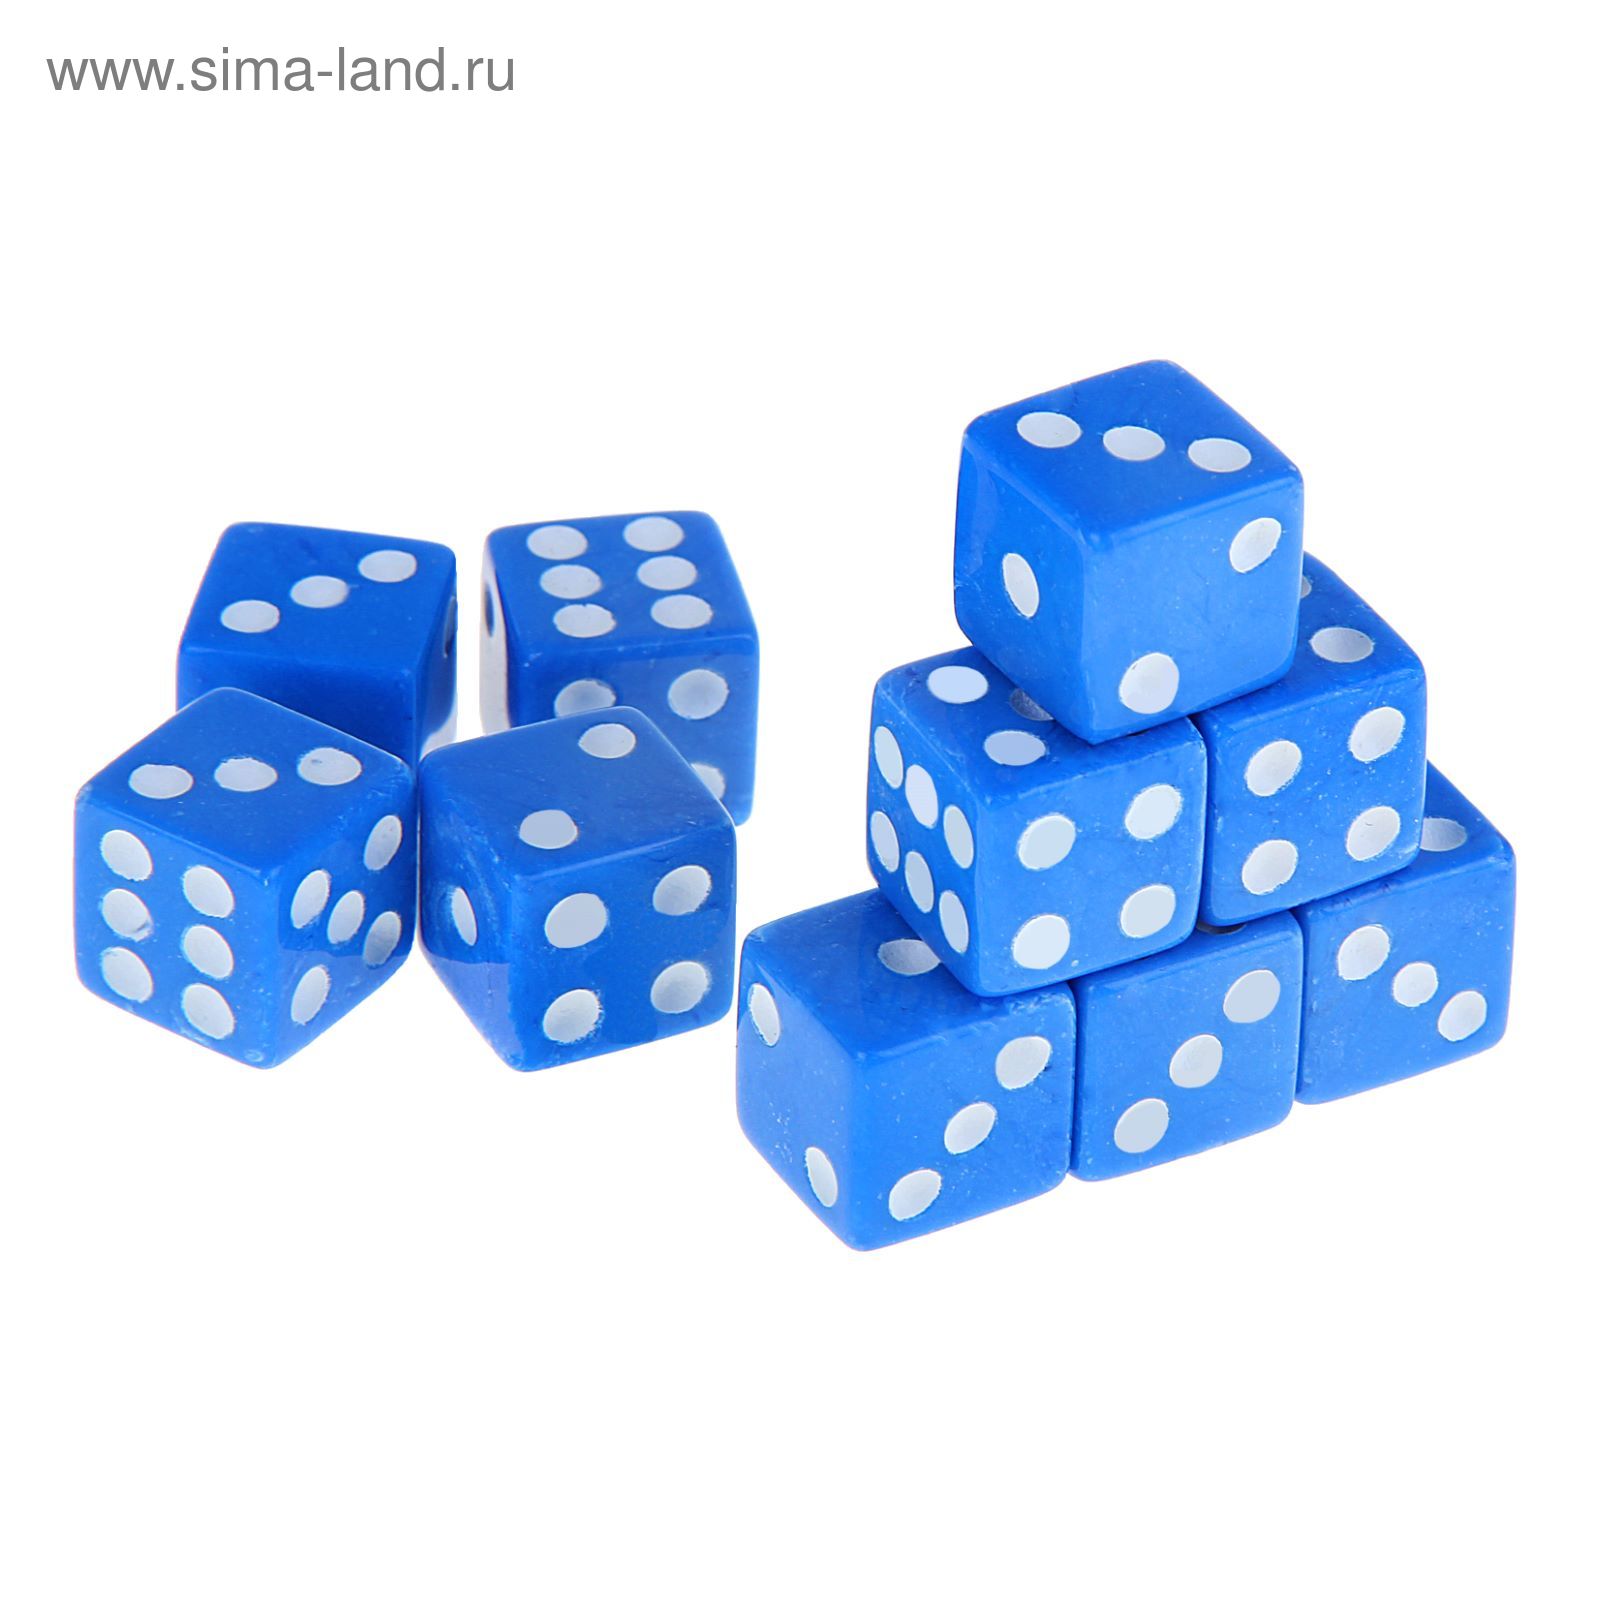 Кубики игральные 1,6 х 1,6 см, синие с белыми точками, фасовка 100 шт.